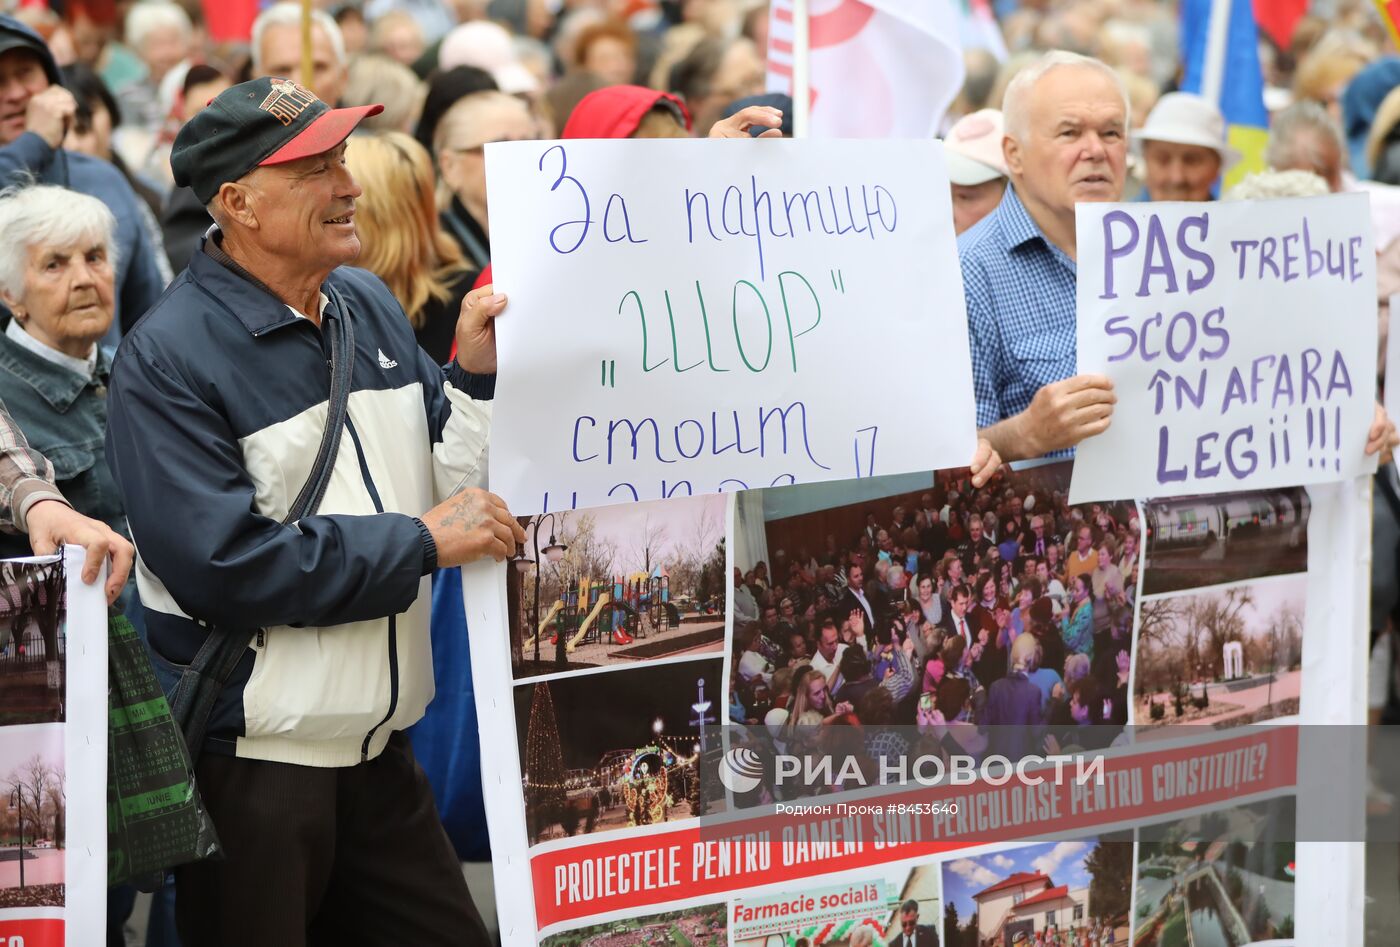 Акция протеста оппозиции в Молдавии 